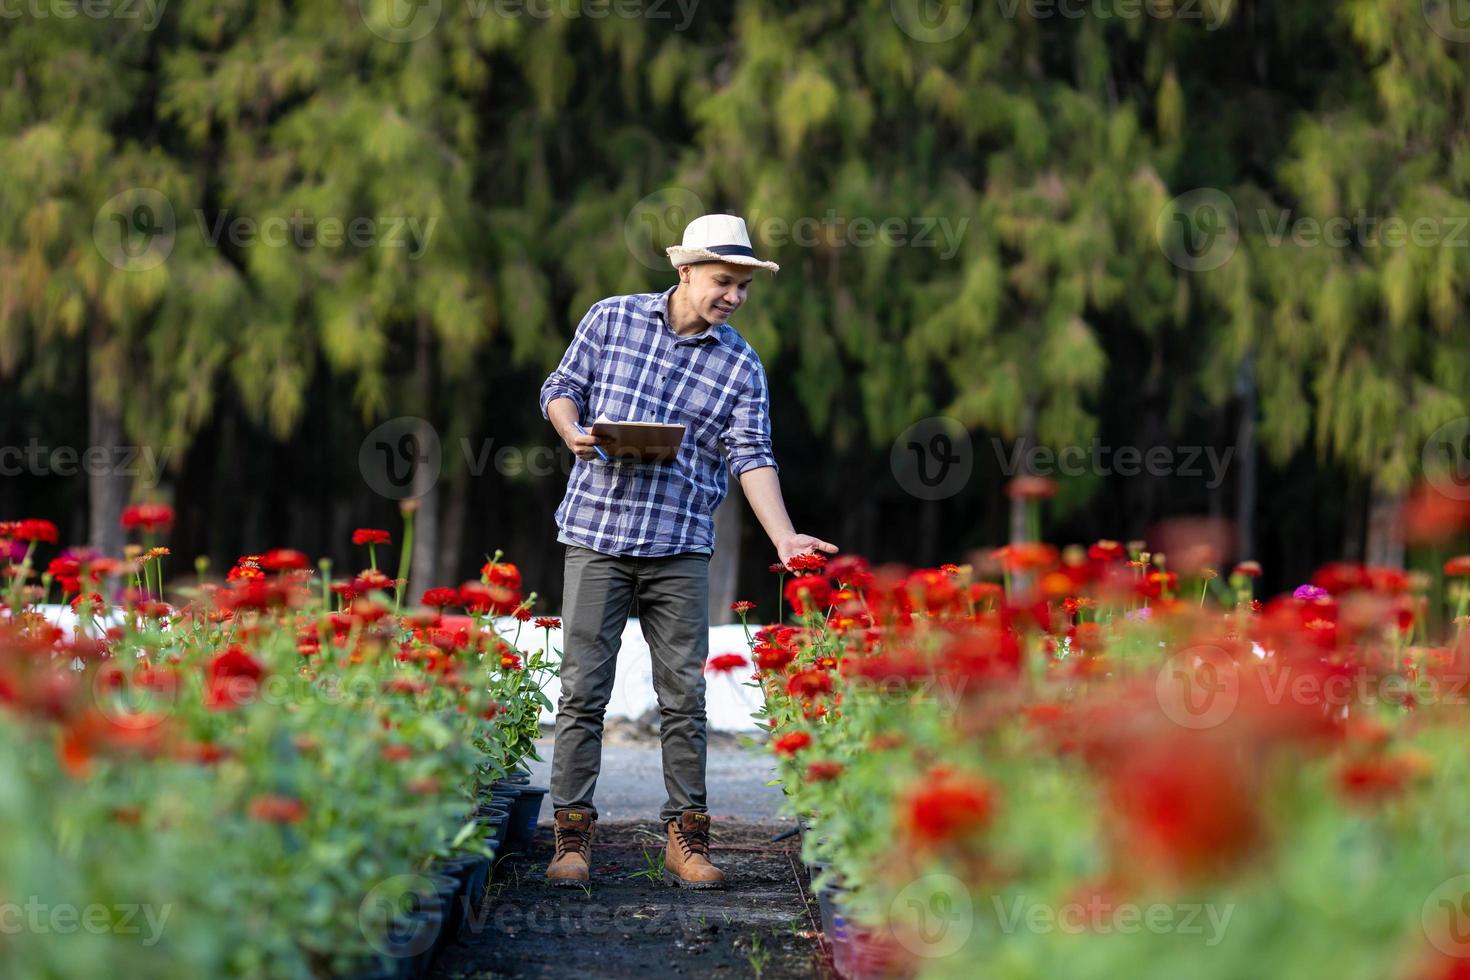 asiatique jardinier est prise Remarque en utilisant agrafe planche sur le croissance et santé de rouge zinnia plante tandis que travail dans le sien rural champ ferme pour médicinal herbe et Couper fleur concept photo